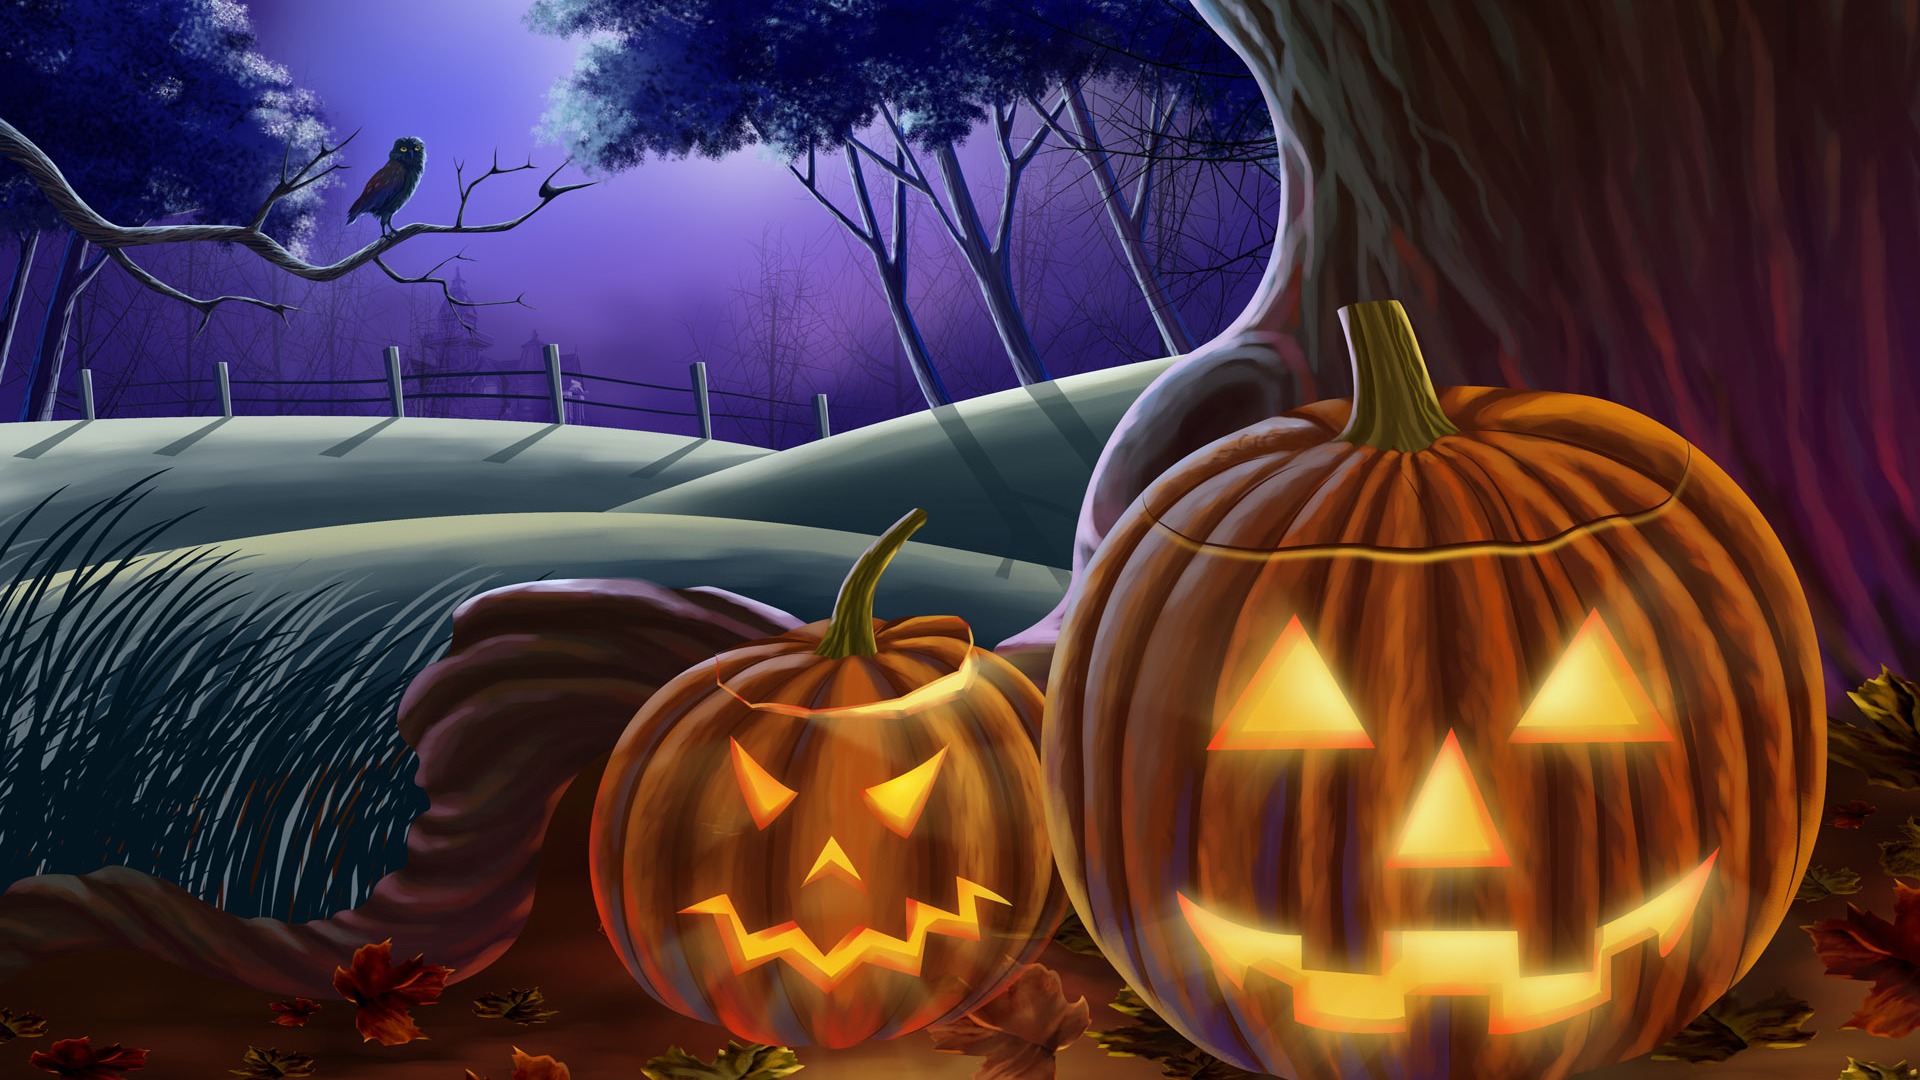 Fondos de Halloween temáticos (3) #6 - 1920x1080